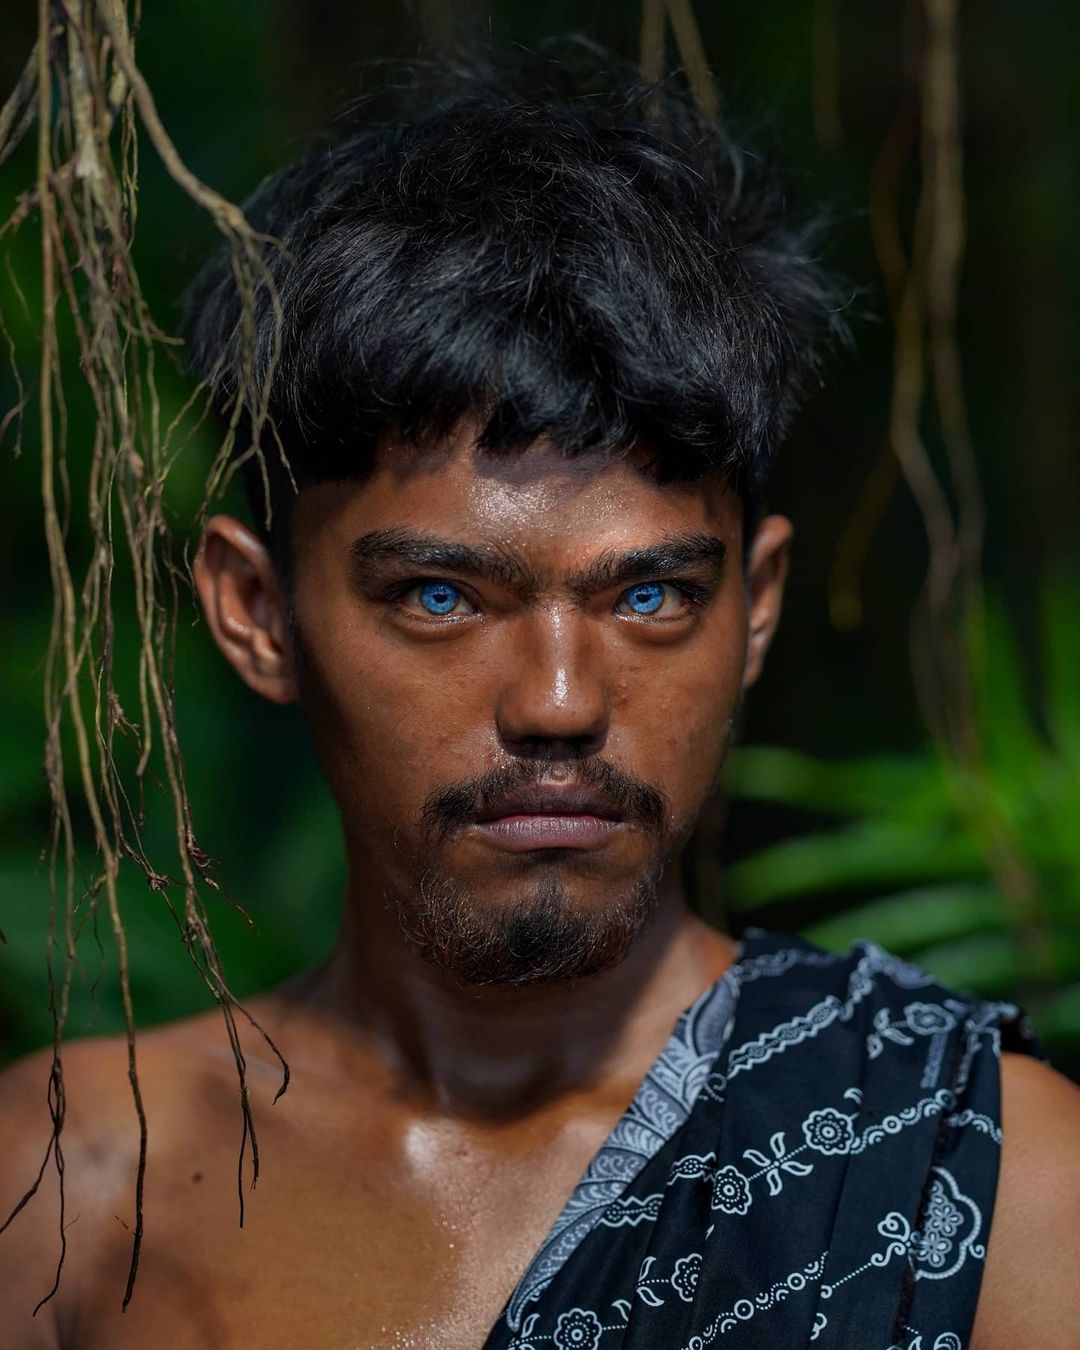 Tribu de Indonesia llena de gente con impresionantes ojos azules lo sorprenderá tribu The